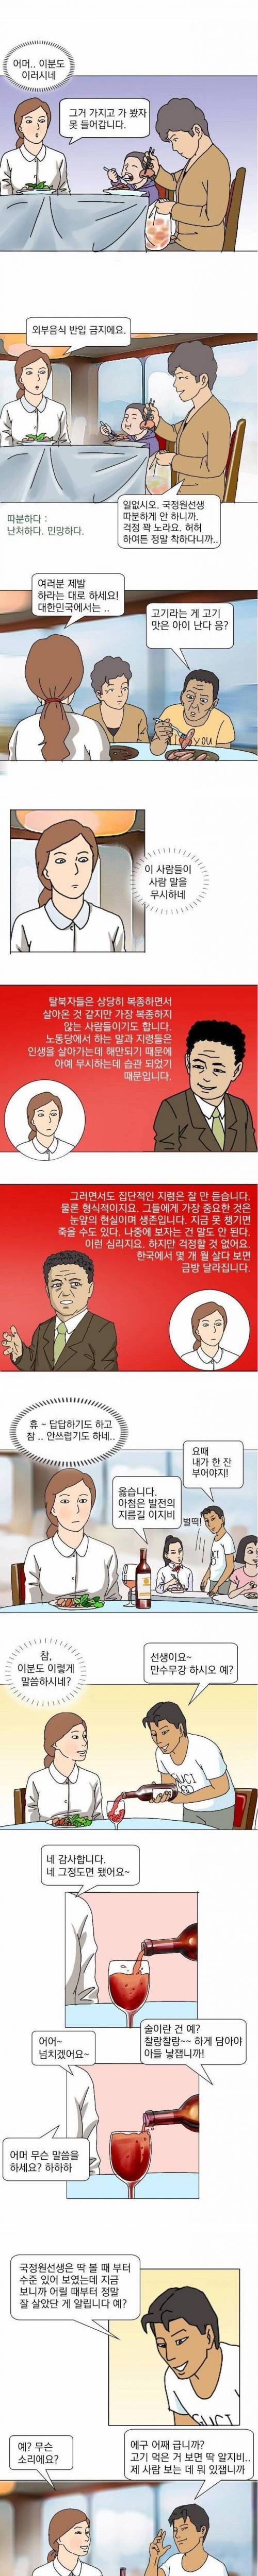 탈북 만화가가 표현한 탈북인.jpg